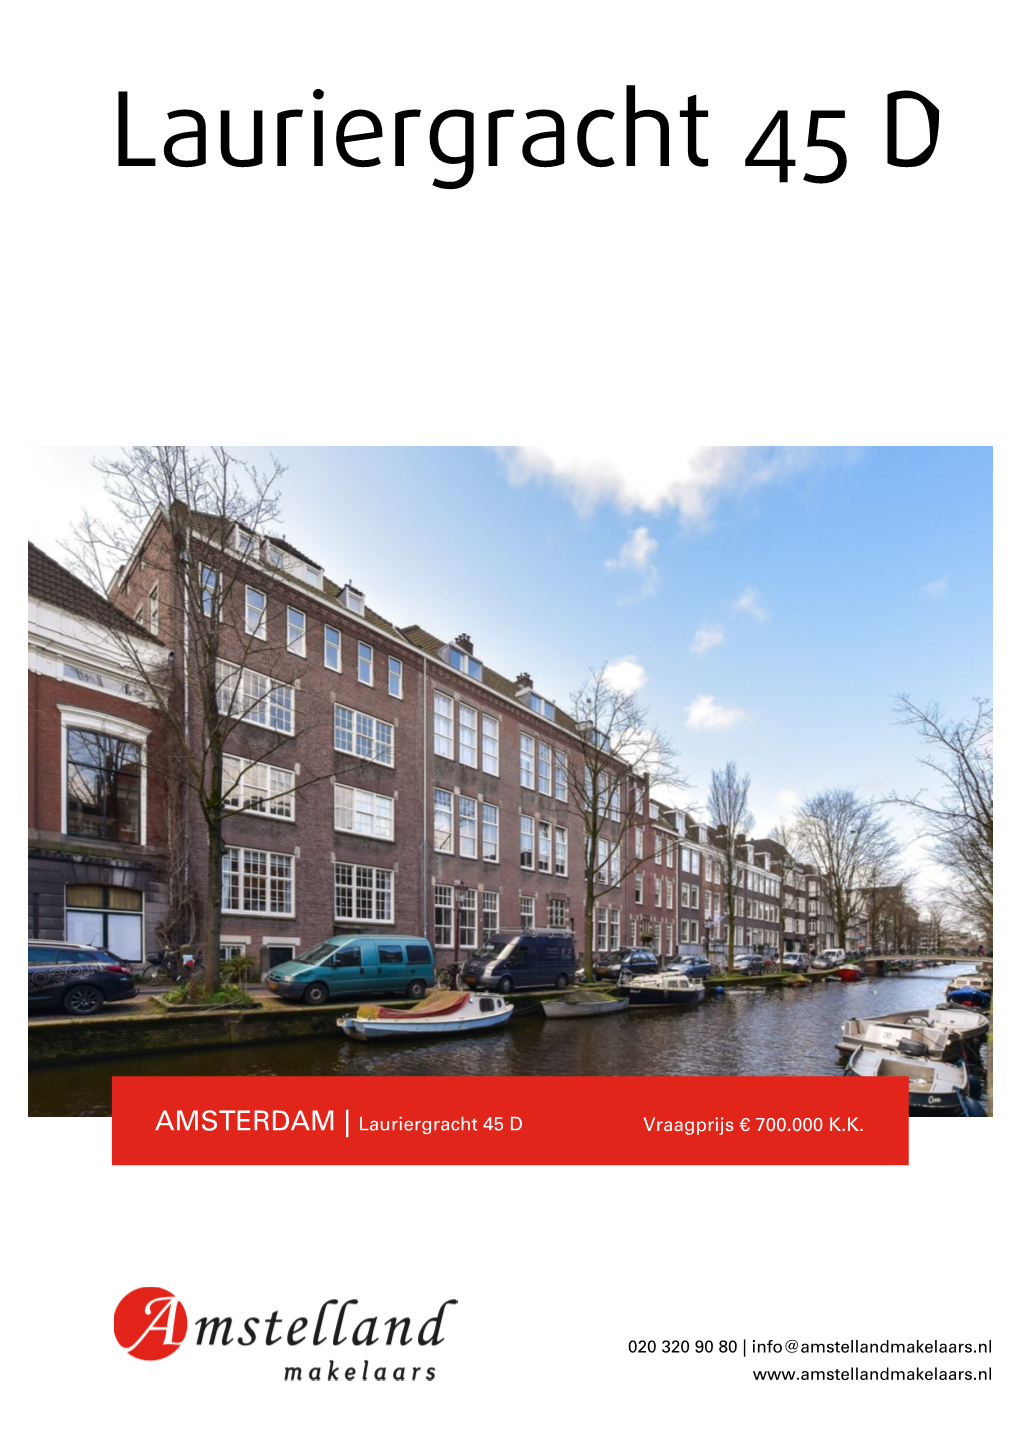 Lauriergracht 45 D in Amsterdam Voor € 700.000